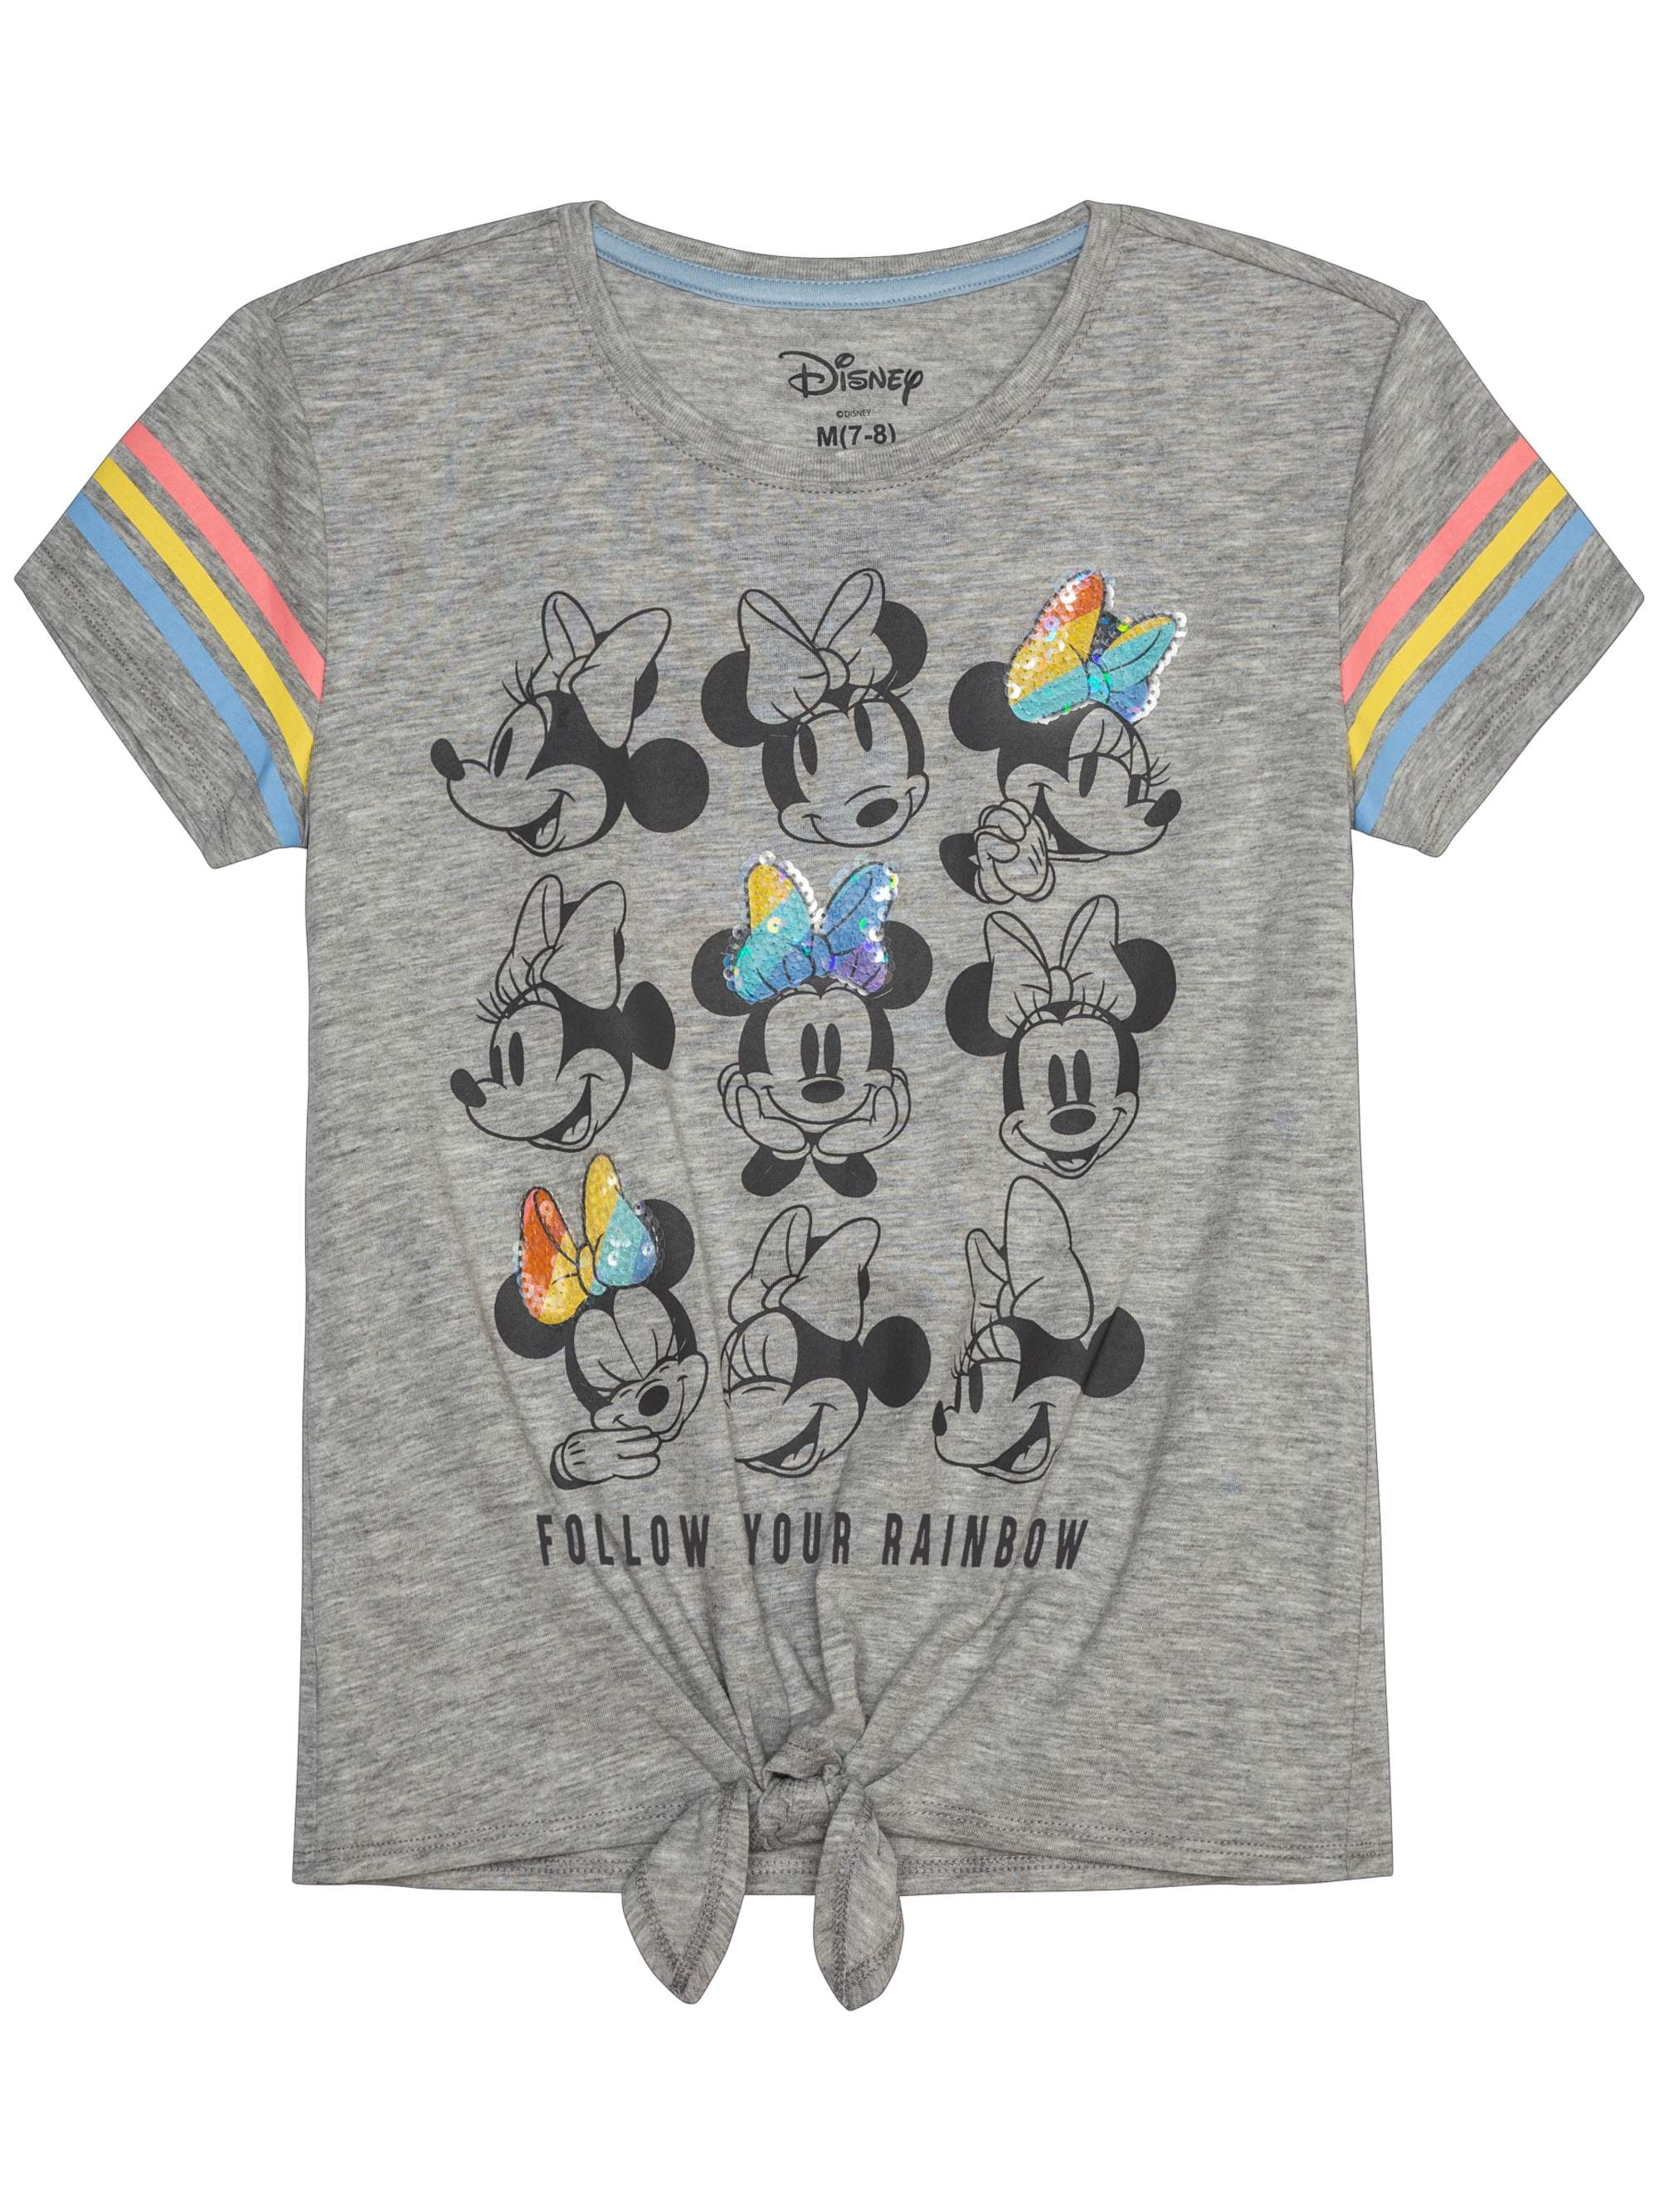 10/12 Minnie Mouse Disney Girls T-shirt Multicolor Size L 